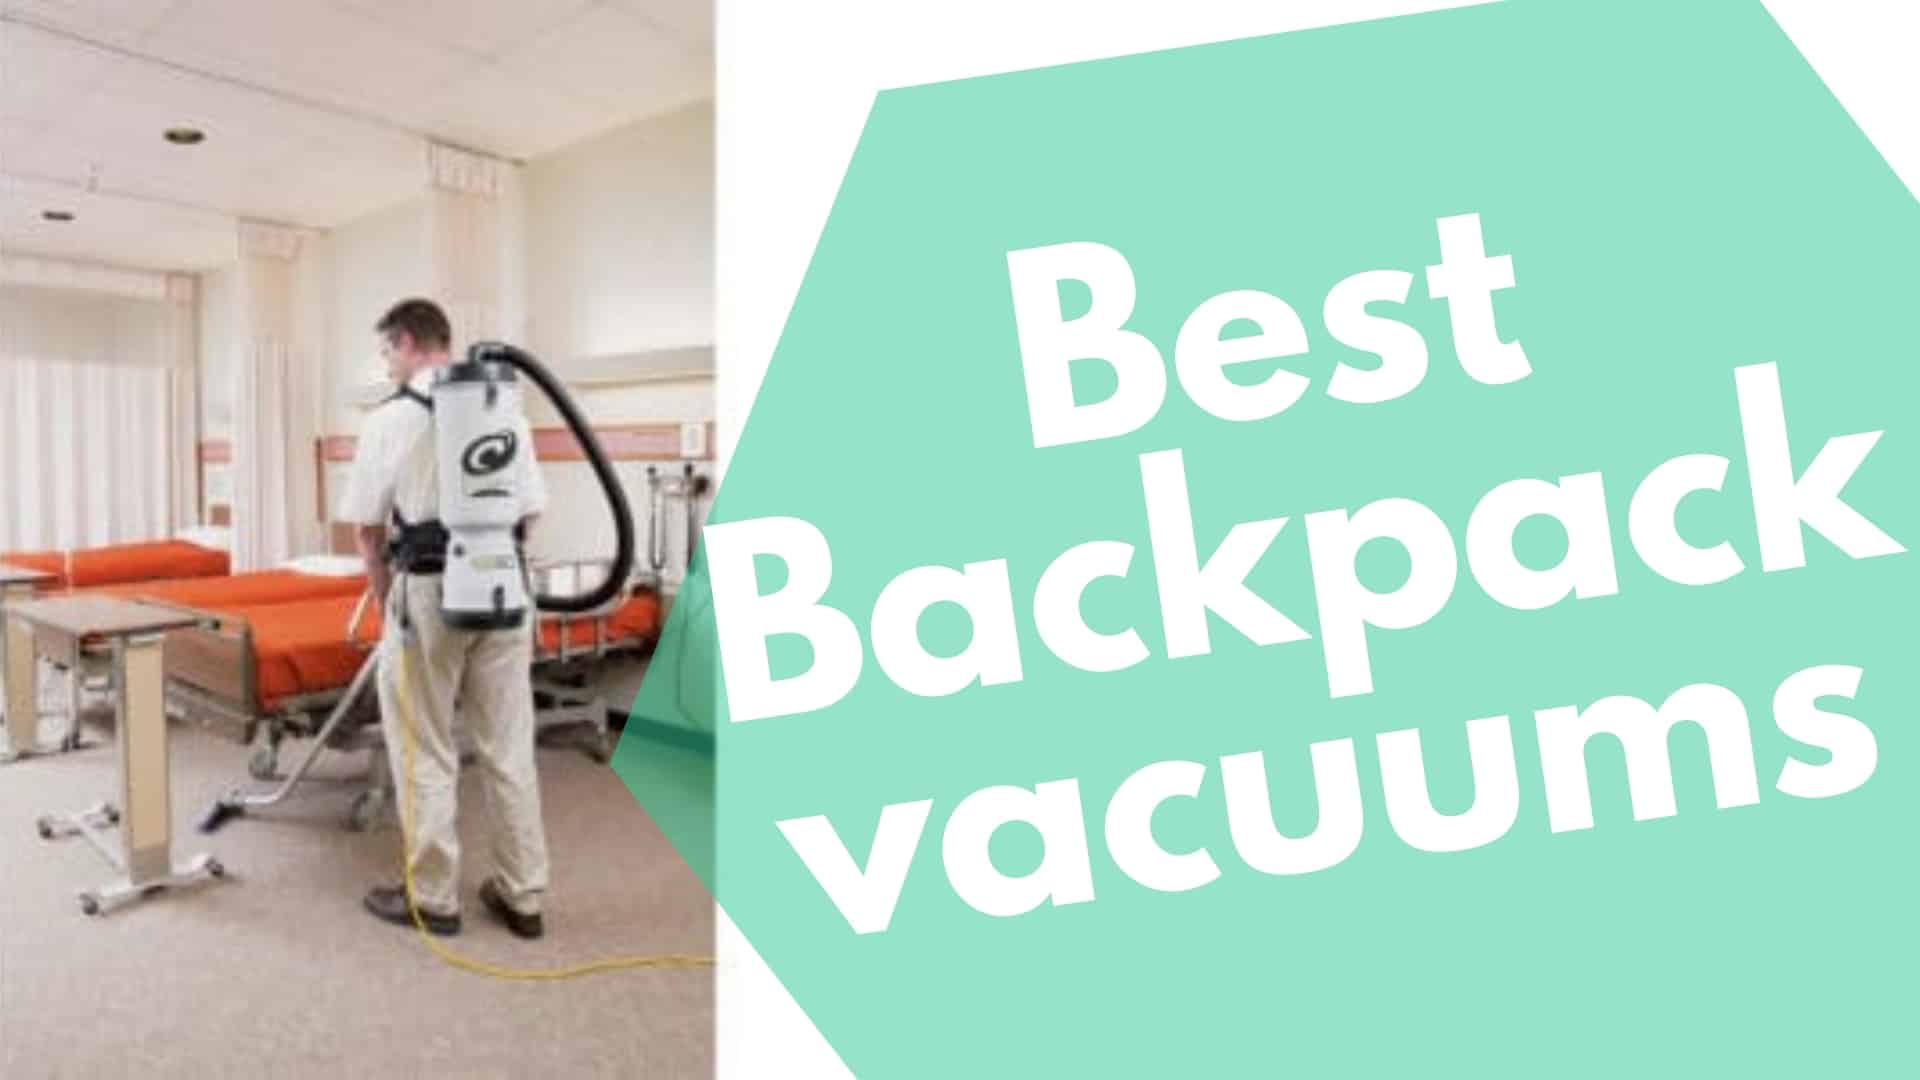 Best Backpack vacuums